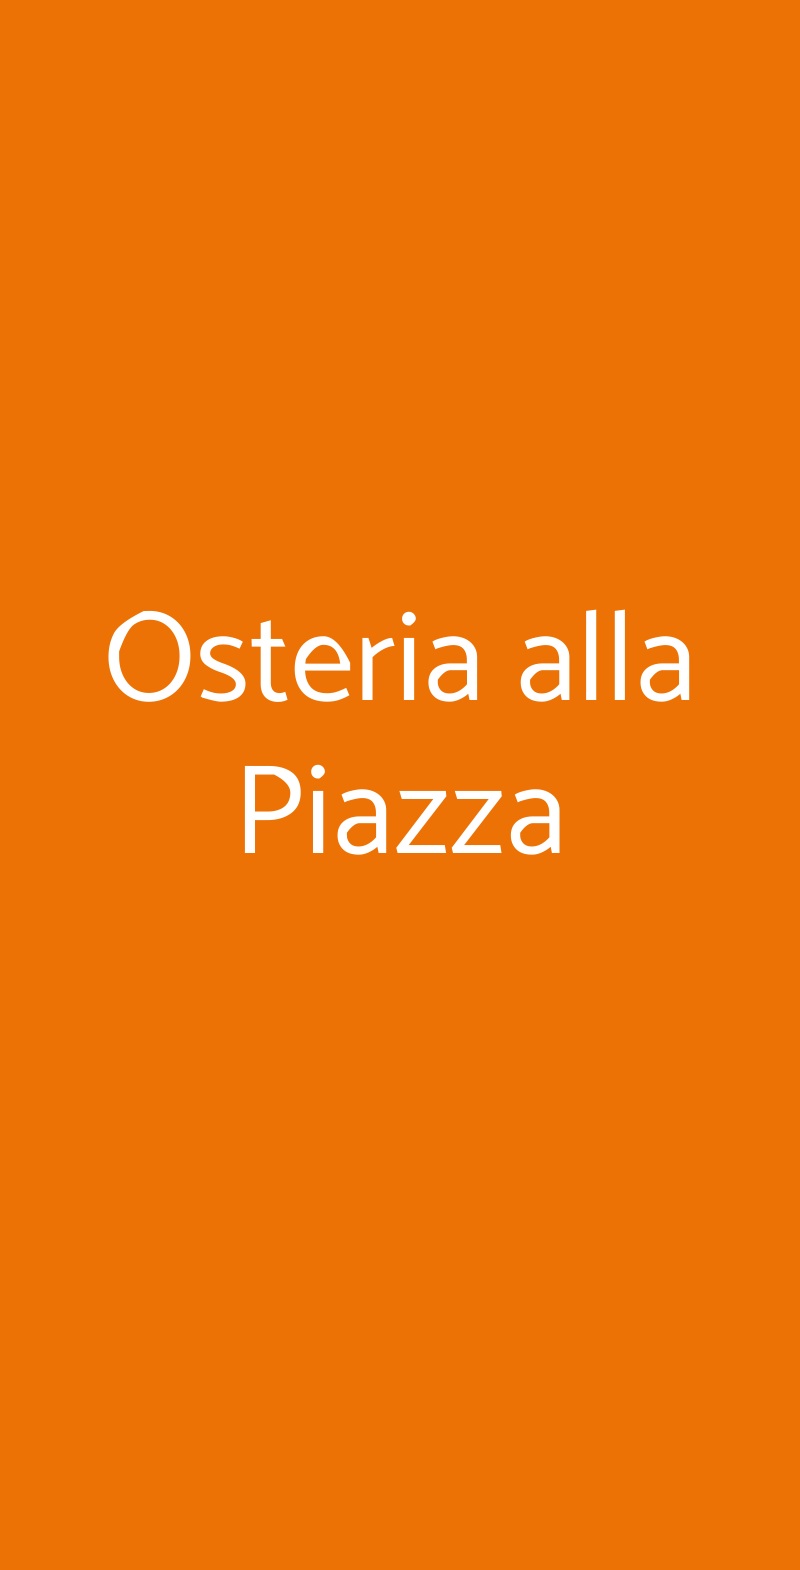 Osteria alla Piazza Castellina in Chianti menù 1 pagina